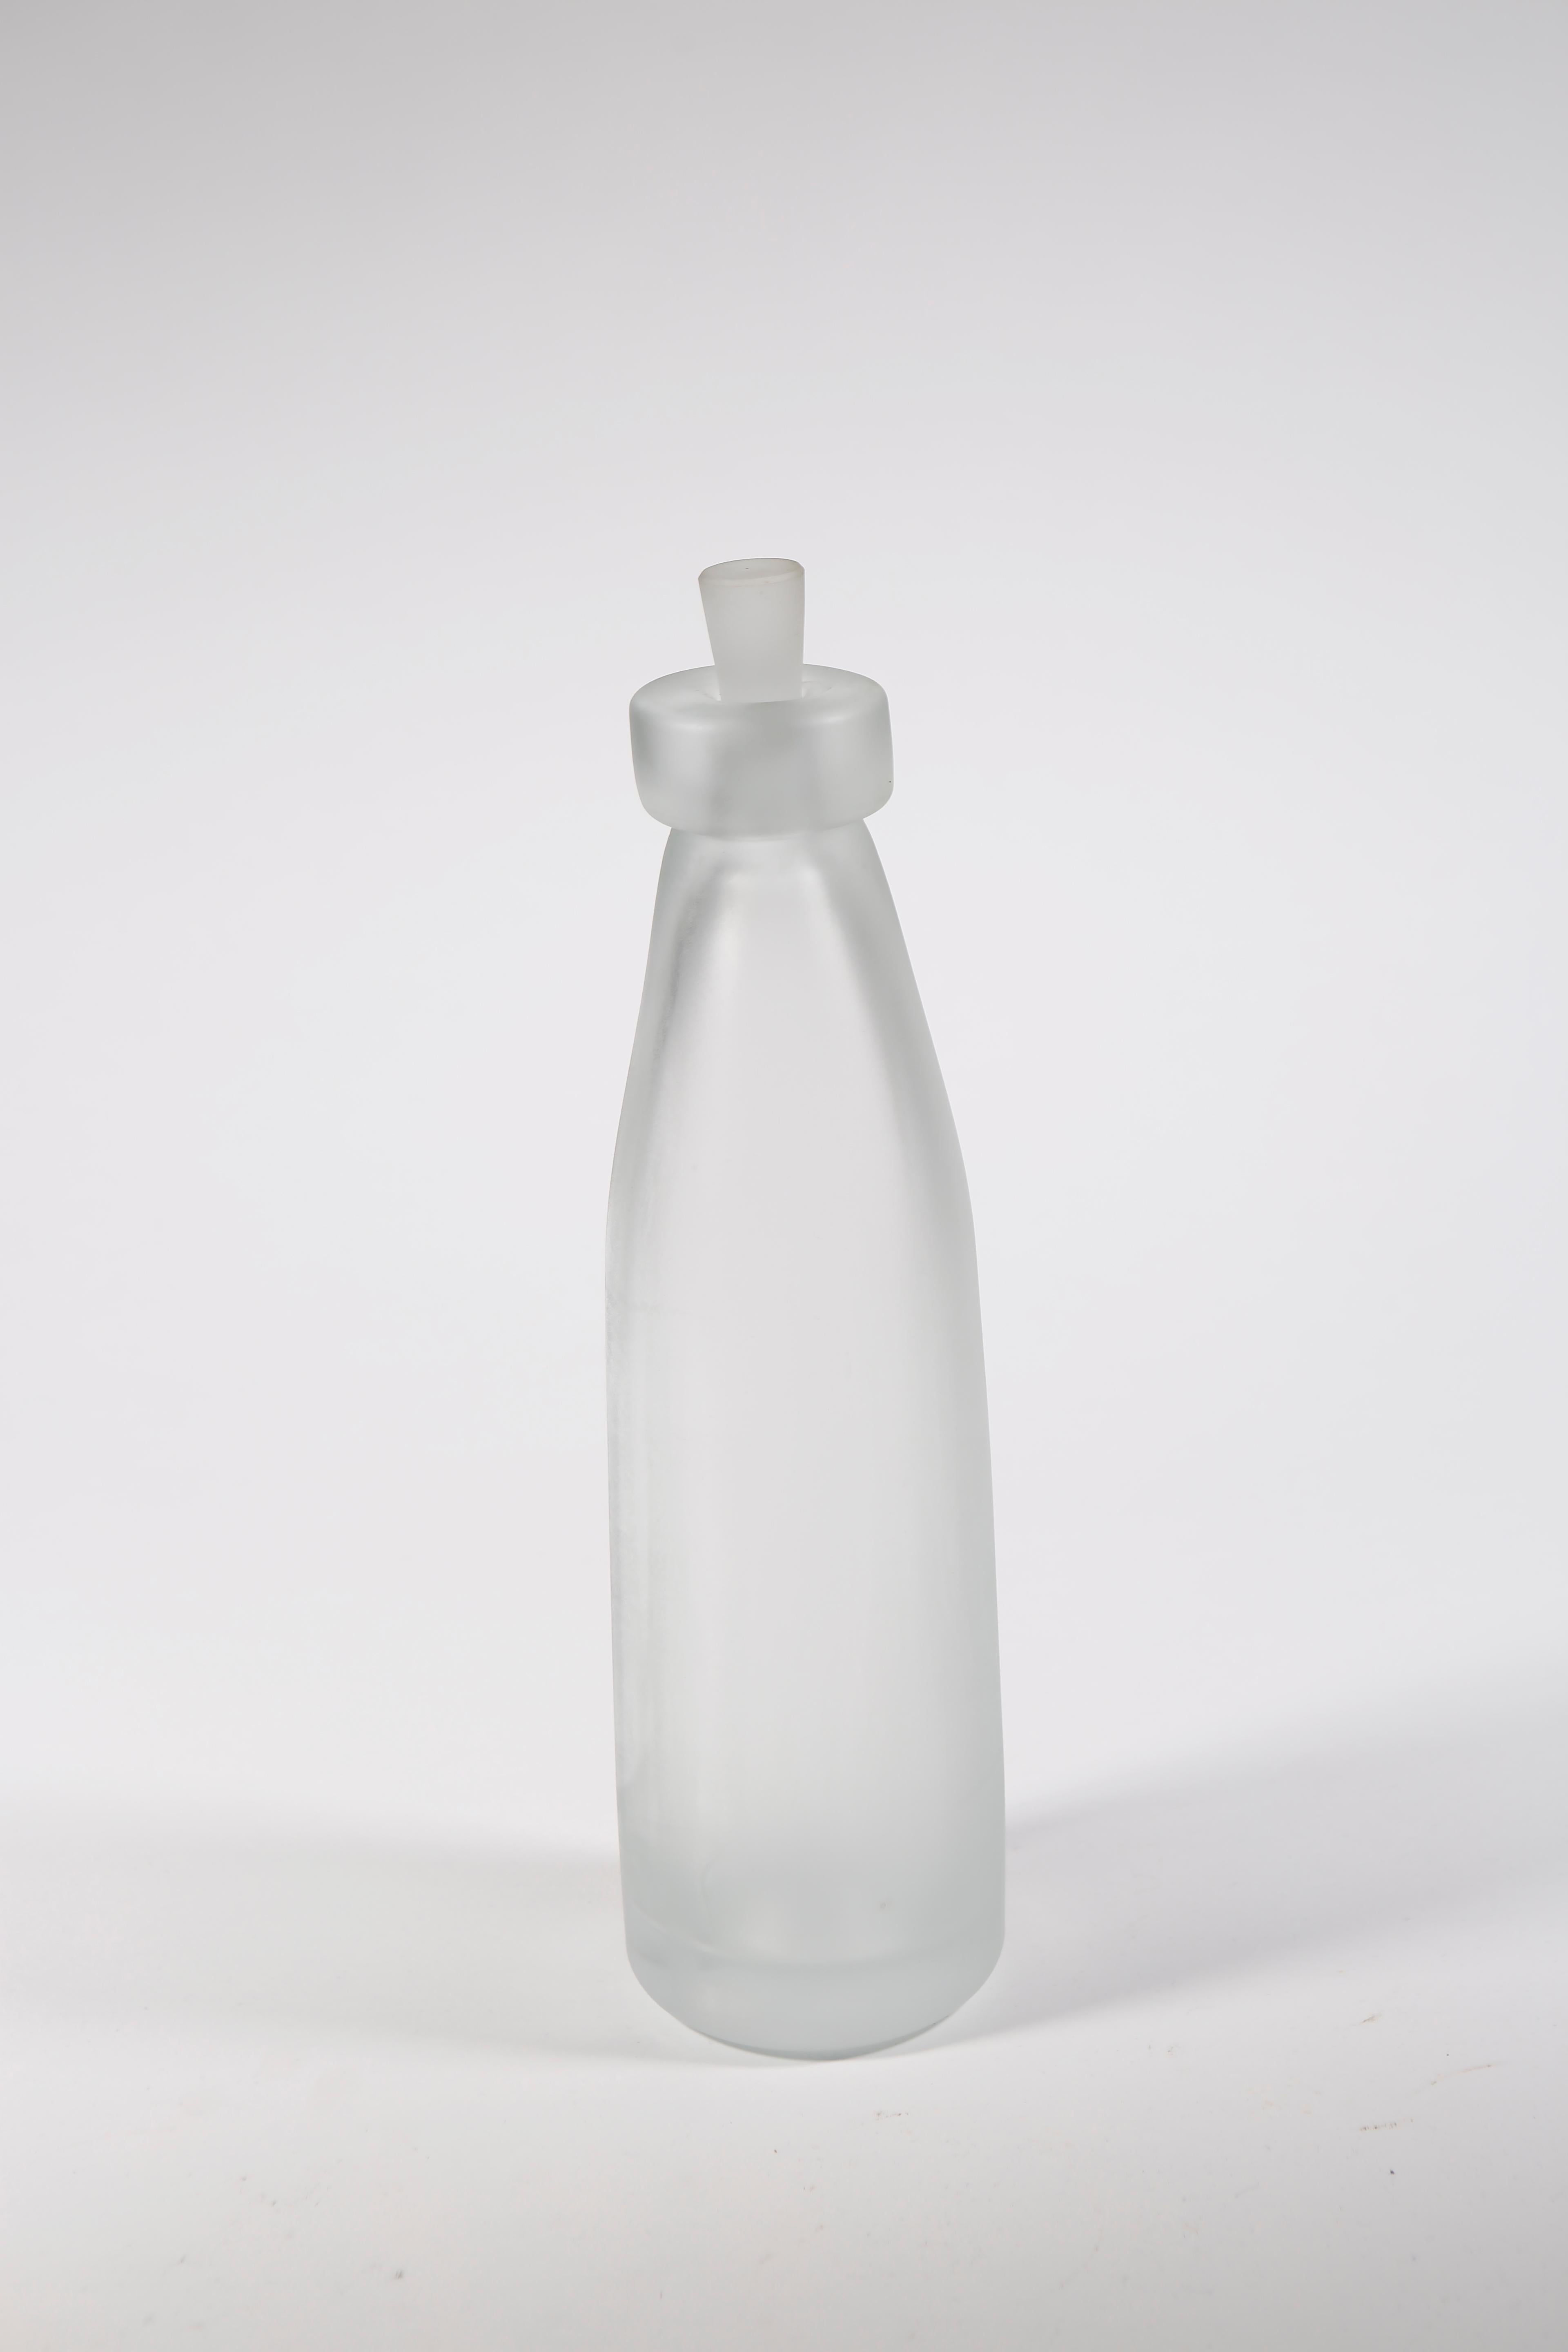 Whole Nother Melk Bottles/Vases: Etched Blown Glass, Chicago, Jordan Mozer, 2013 For Sale 5